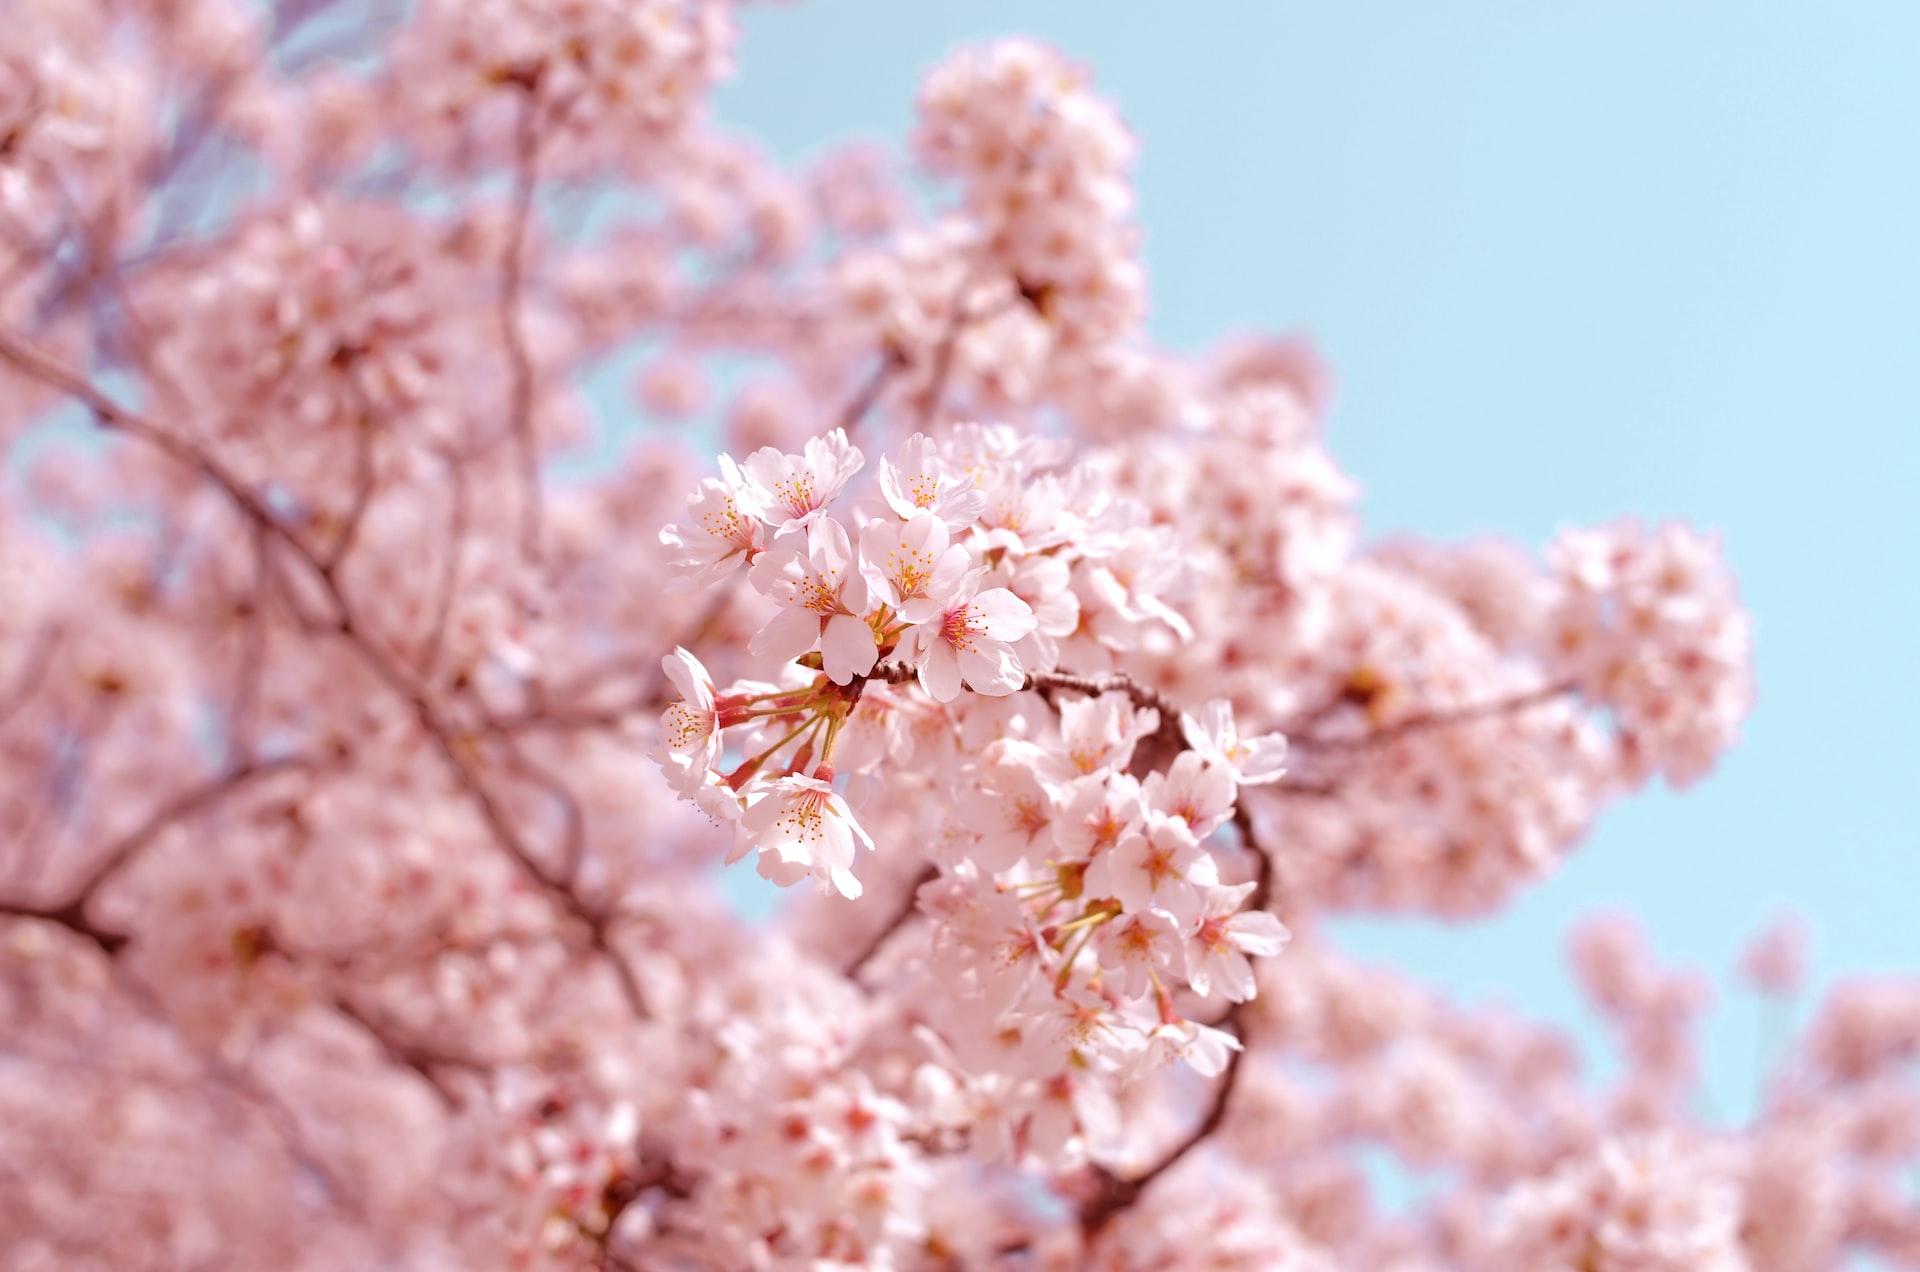 La floraison des cerisiers au Japon s'ouvre bientôt !